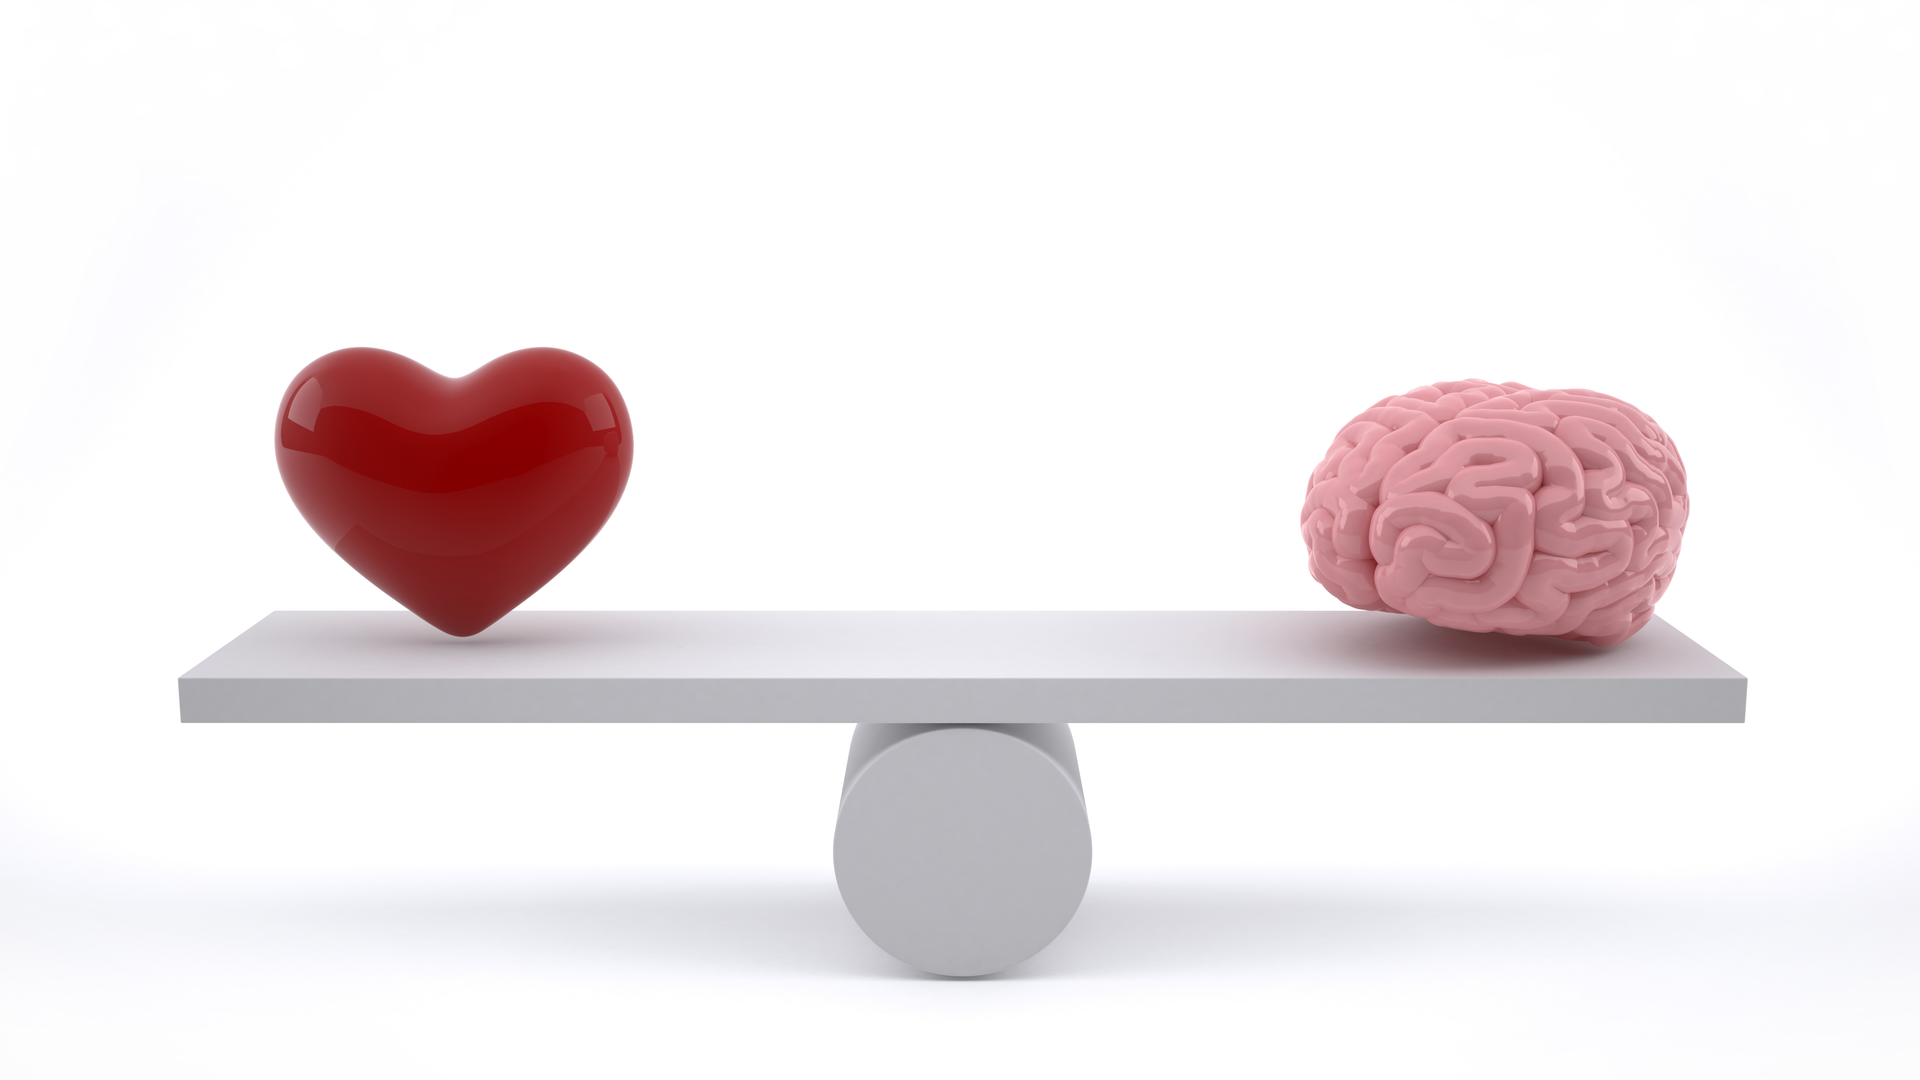 Imagen que muestra un corazón y un cerebro en referencia a las frases motivacionales sobre inteligencia emocional